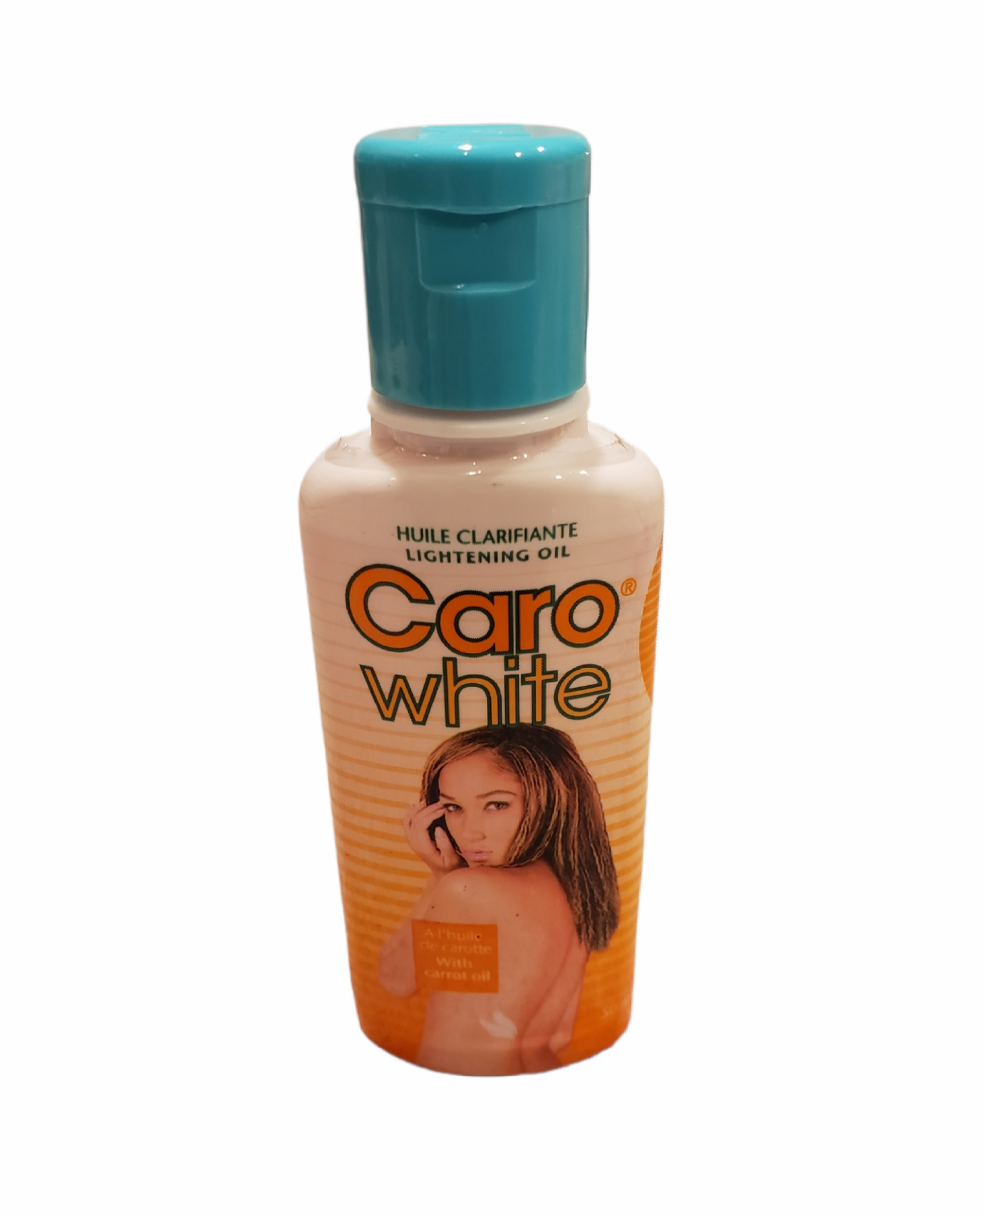 Caro white carrot oil 50ml